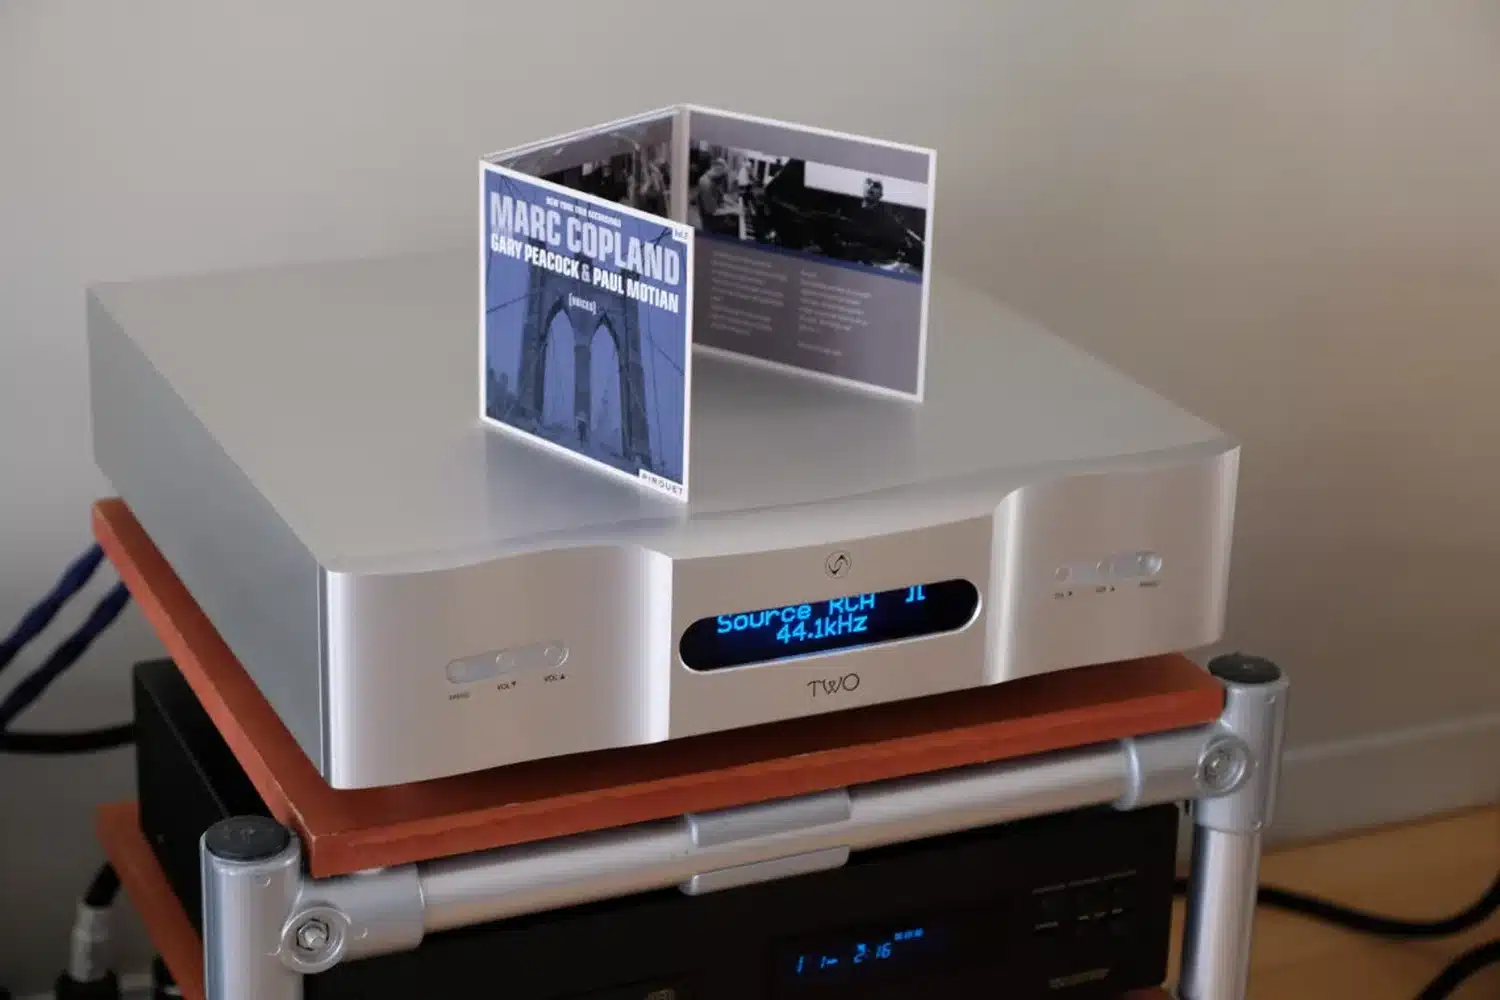 Un DAC Vermeer Audio Two haute résolution affichant « 44,1 kHz » surplombé d'une pochette de CD de l'album de jazz de Marc Copland est placé sur une tablette en bois d'un rack en métal (par 1877.audio)